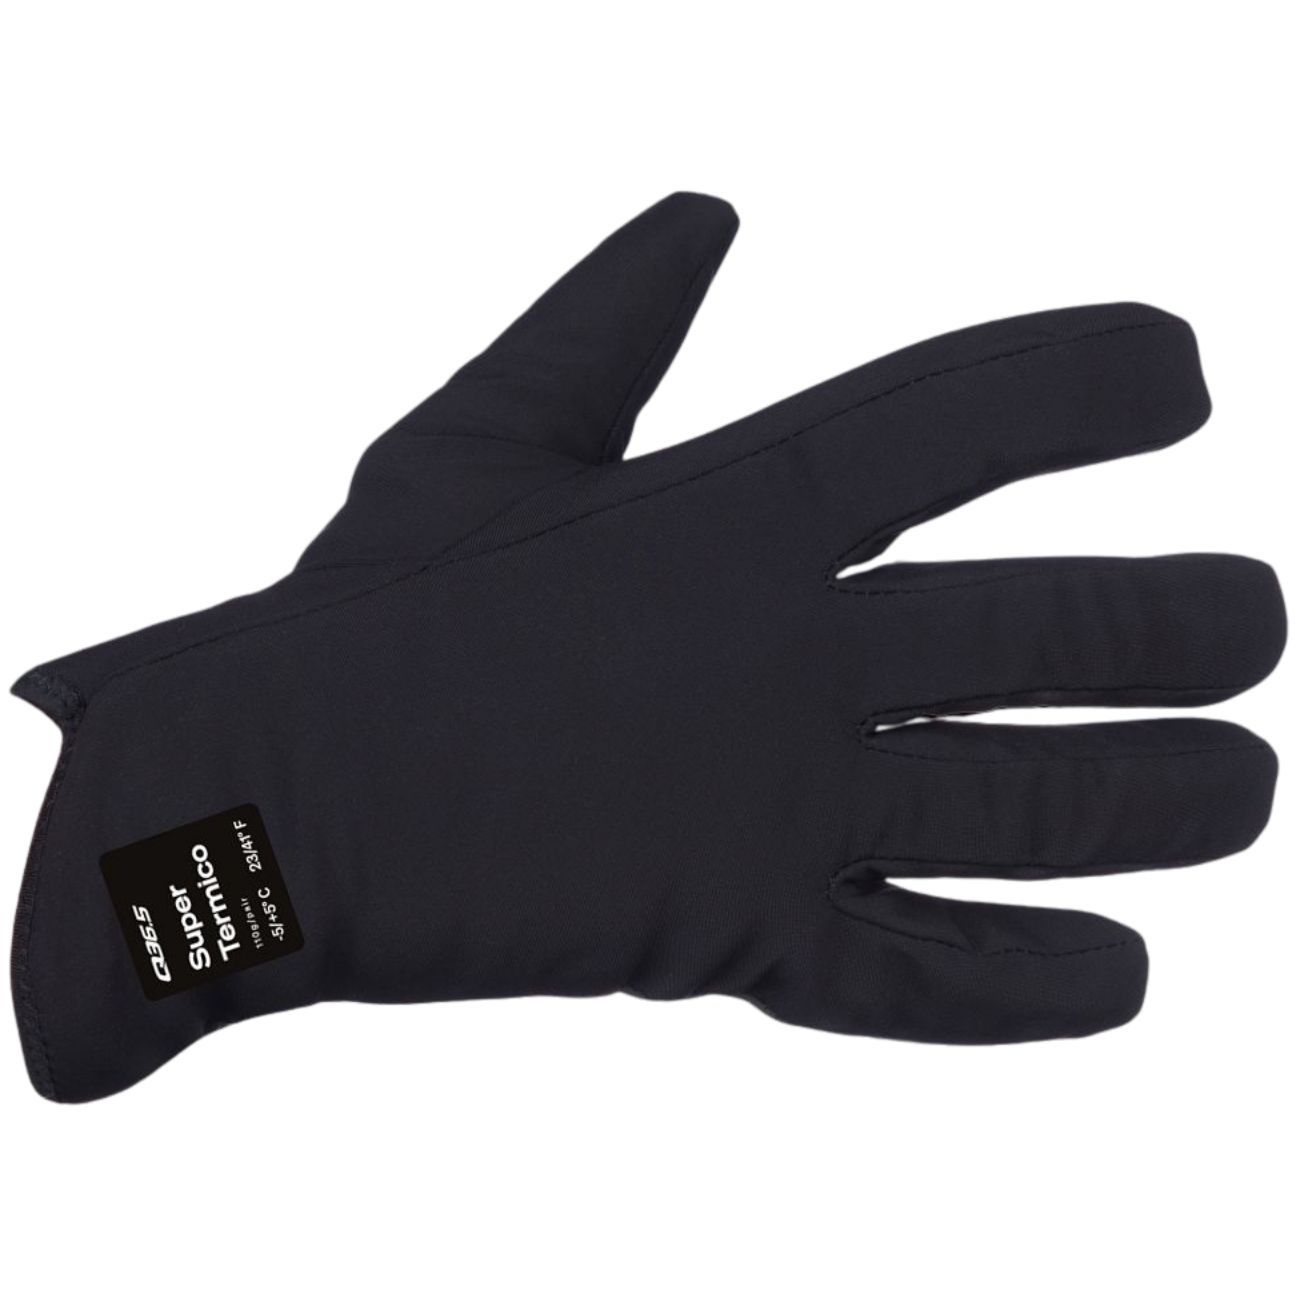 Produktbild von Q36.5 Termico Plus Vollfinger Handschuhe - schwarz